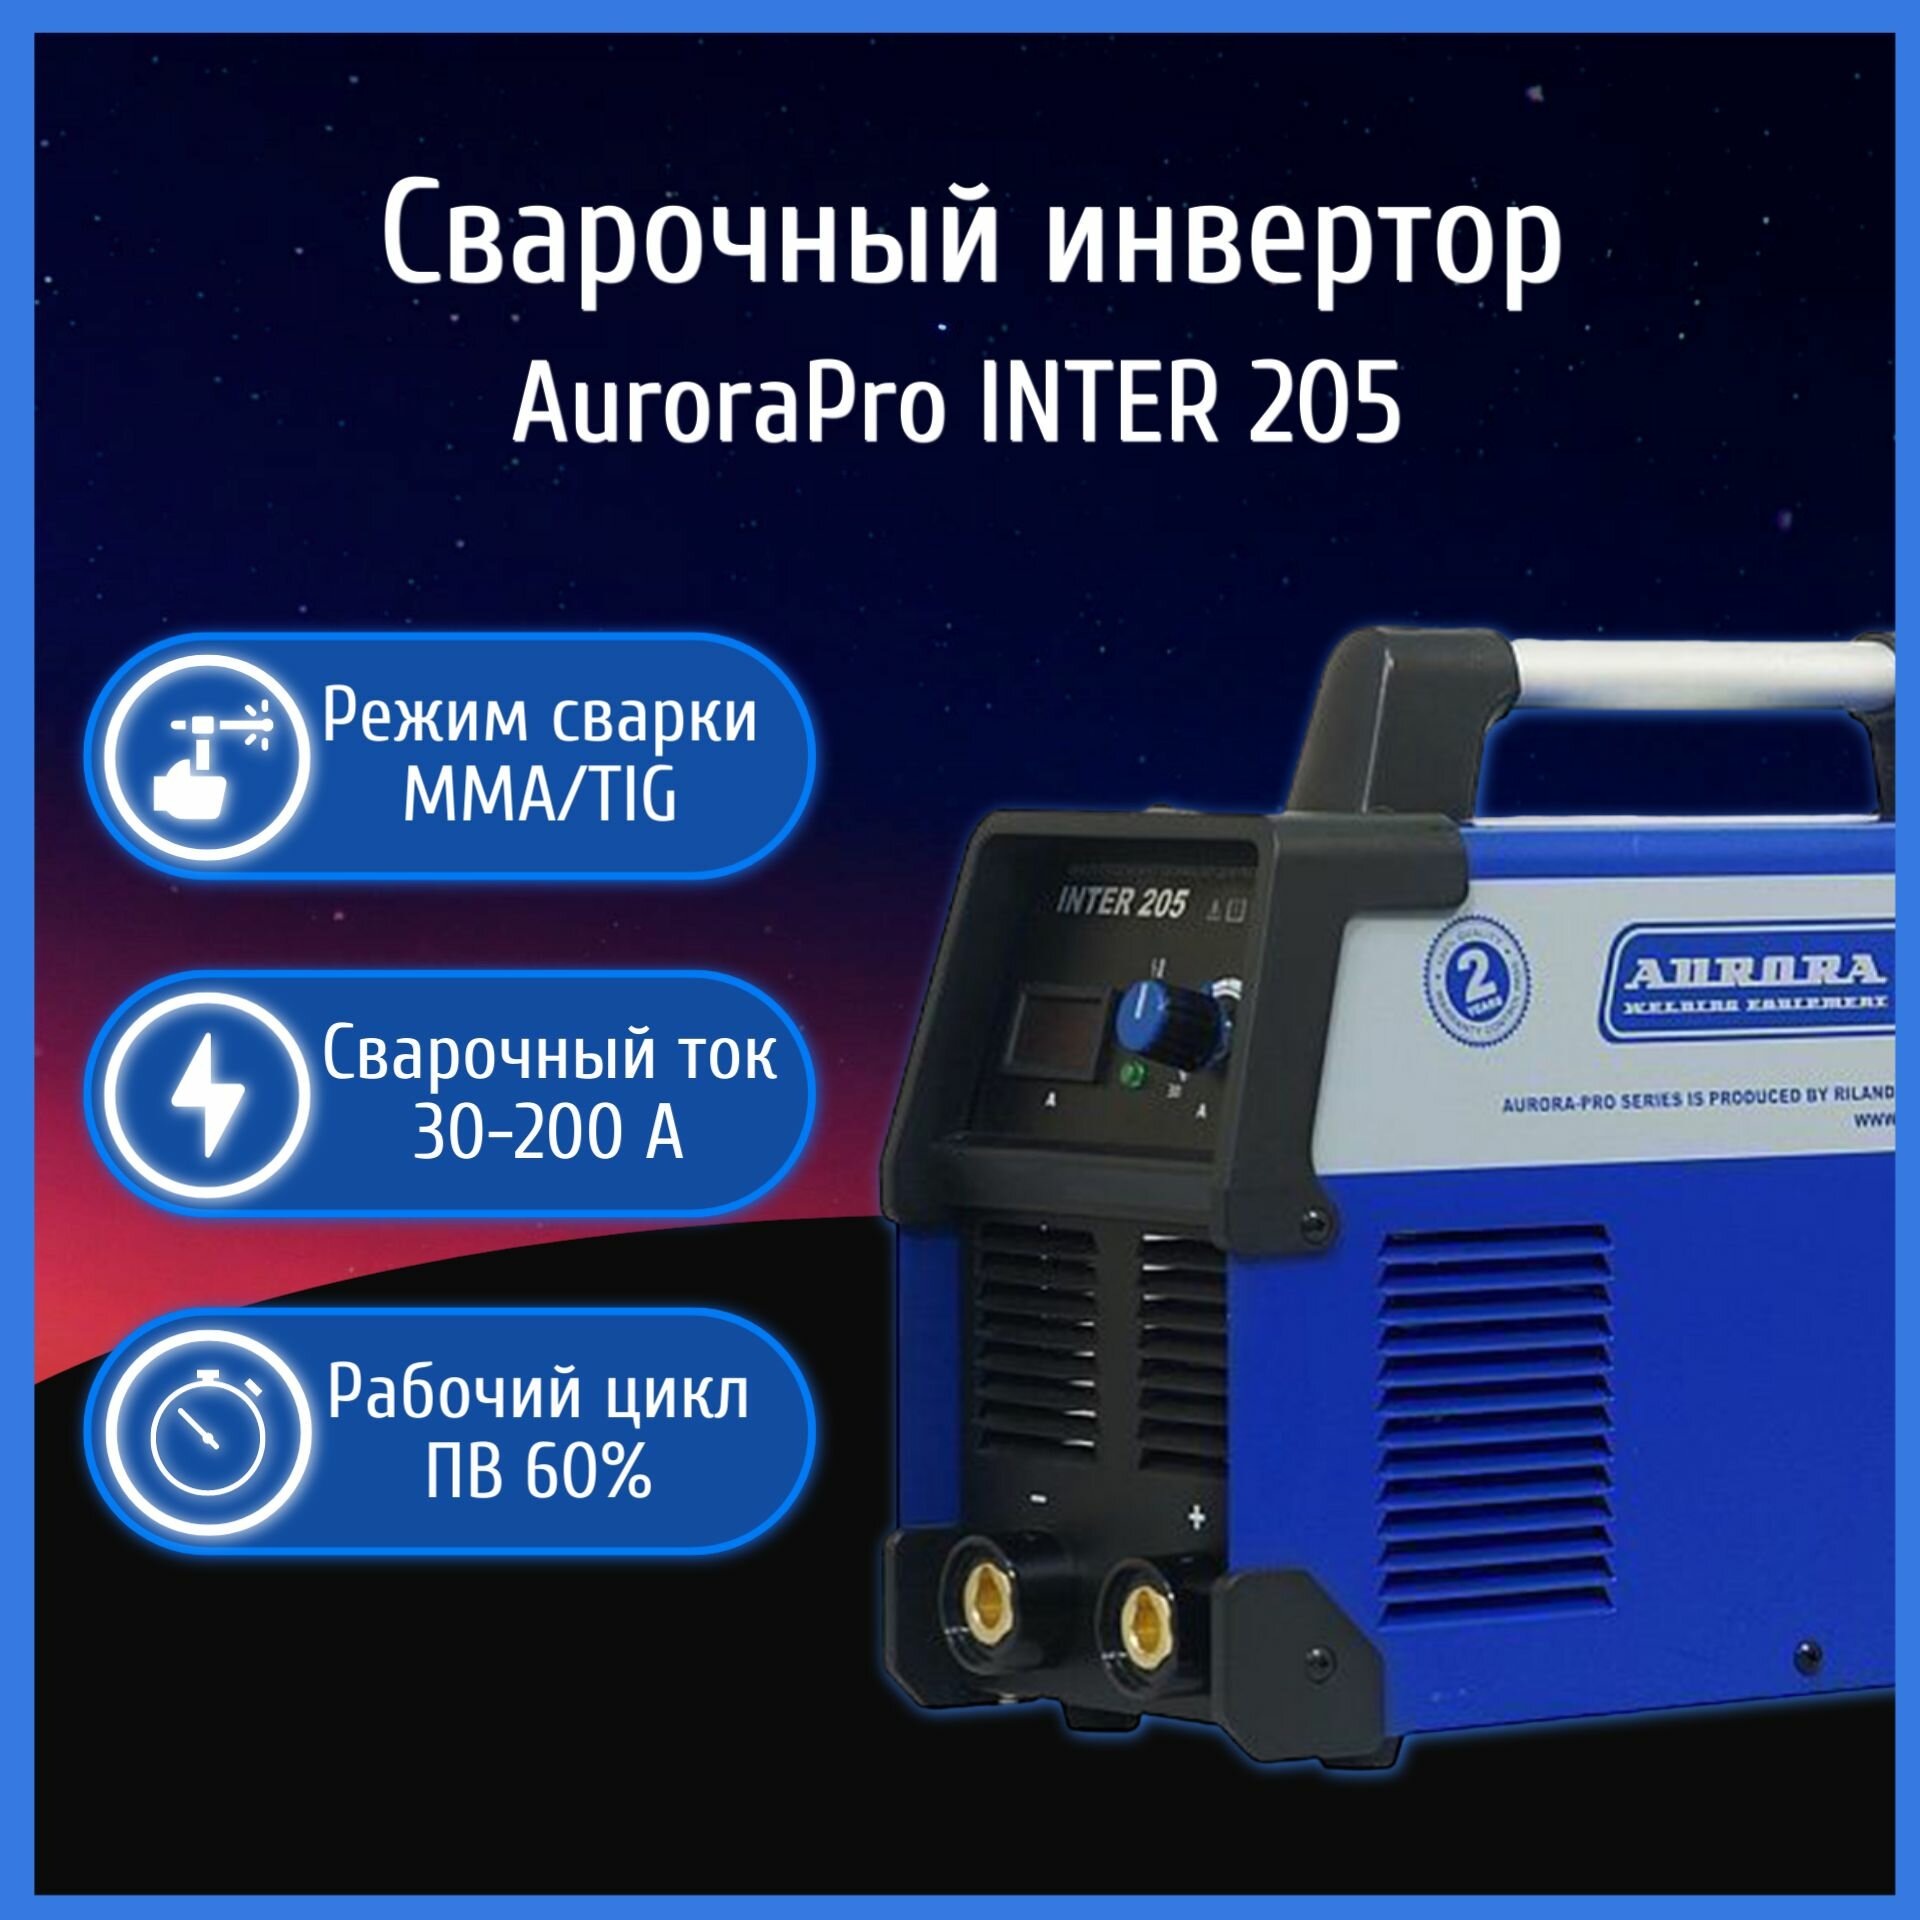 Сварочный аппарат инверторный AuroraPRO INTER 205 + электроды и краги